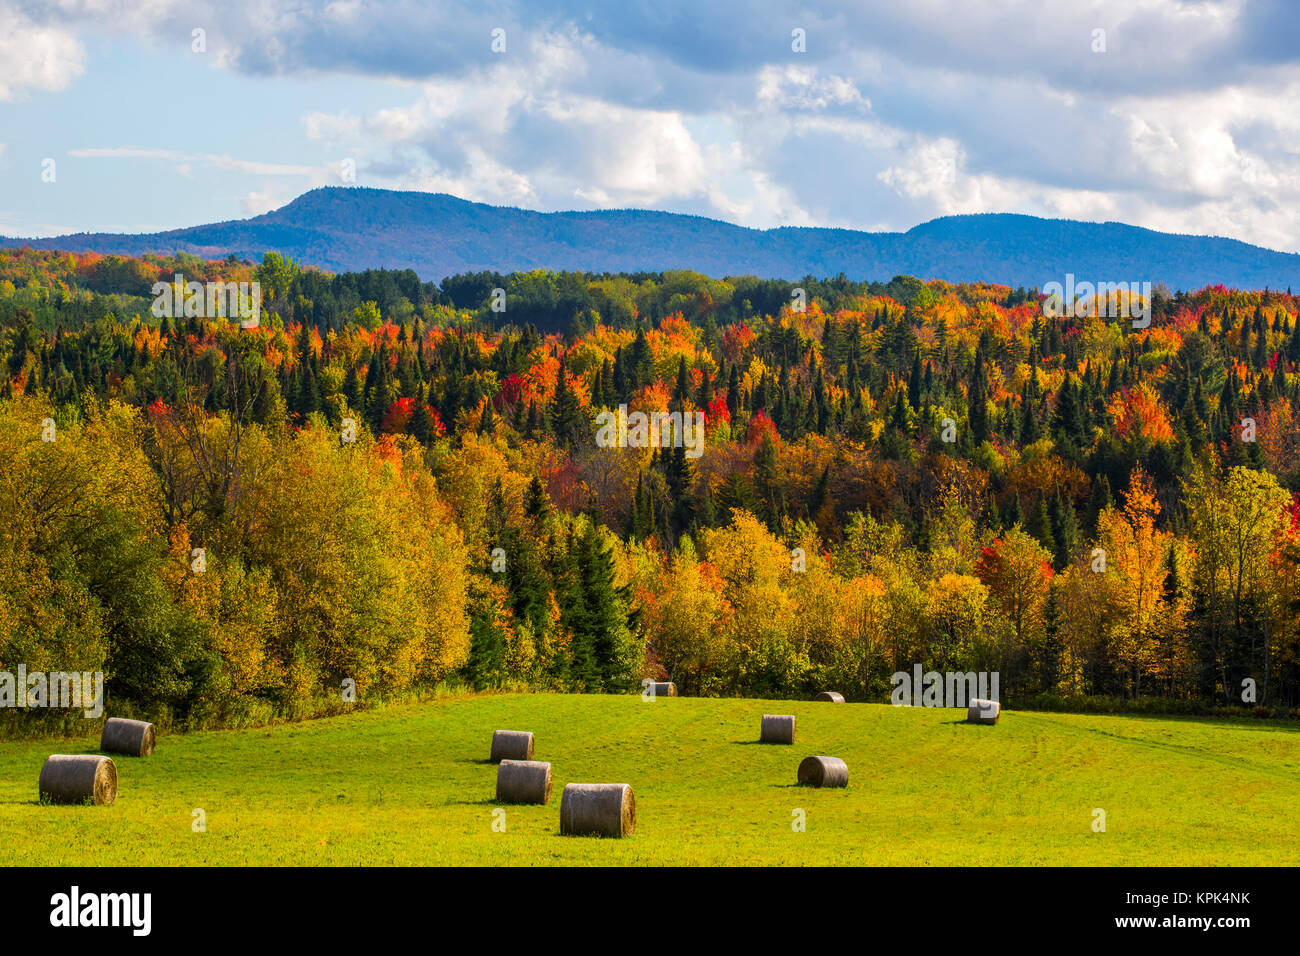 Paysage de forêts sur les collines d'automne feuillage coloré et bottes de foin sur les champs verts luxuriants en premier plan ; Iron Hill, Québec, Canada Banque D'Images